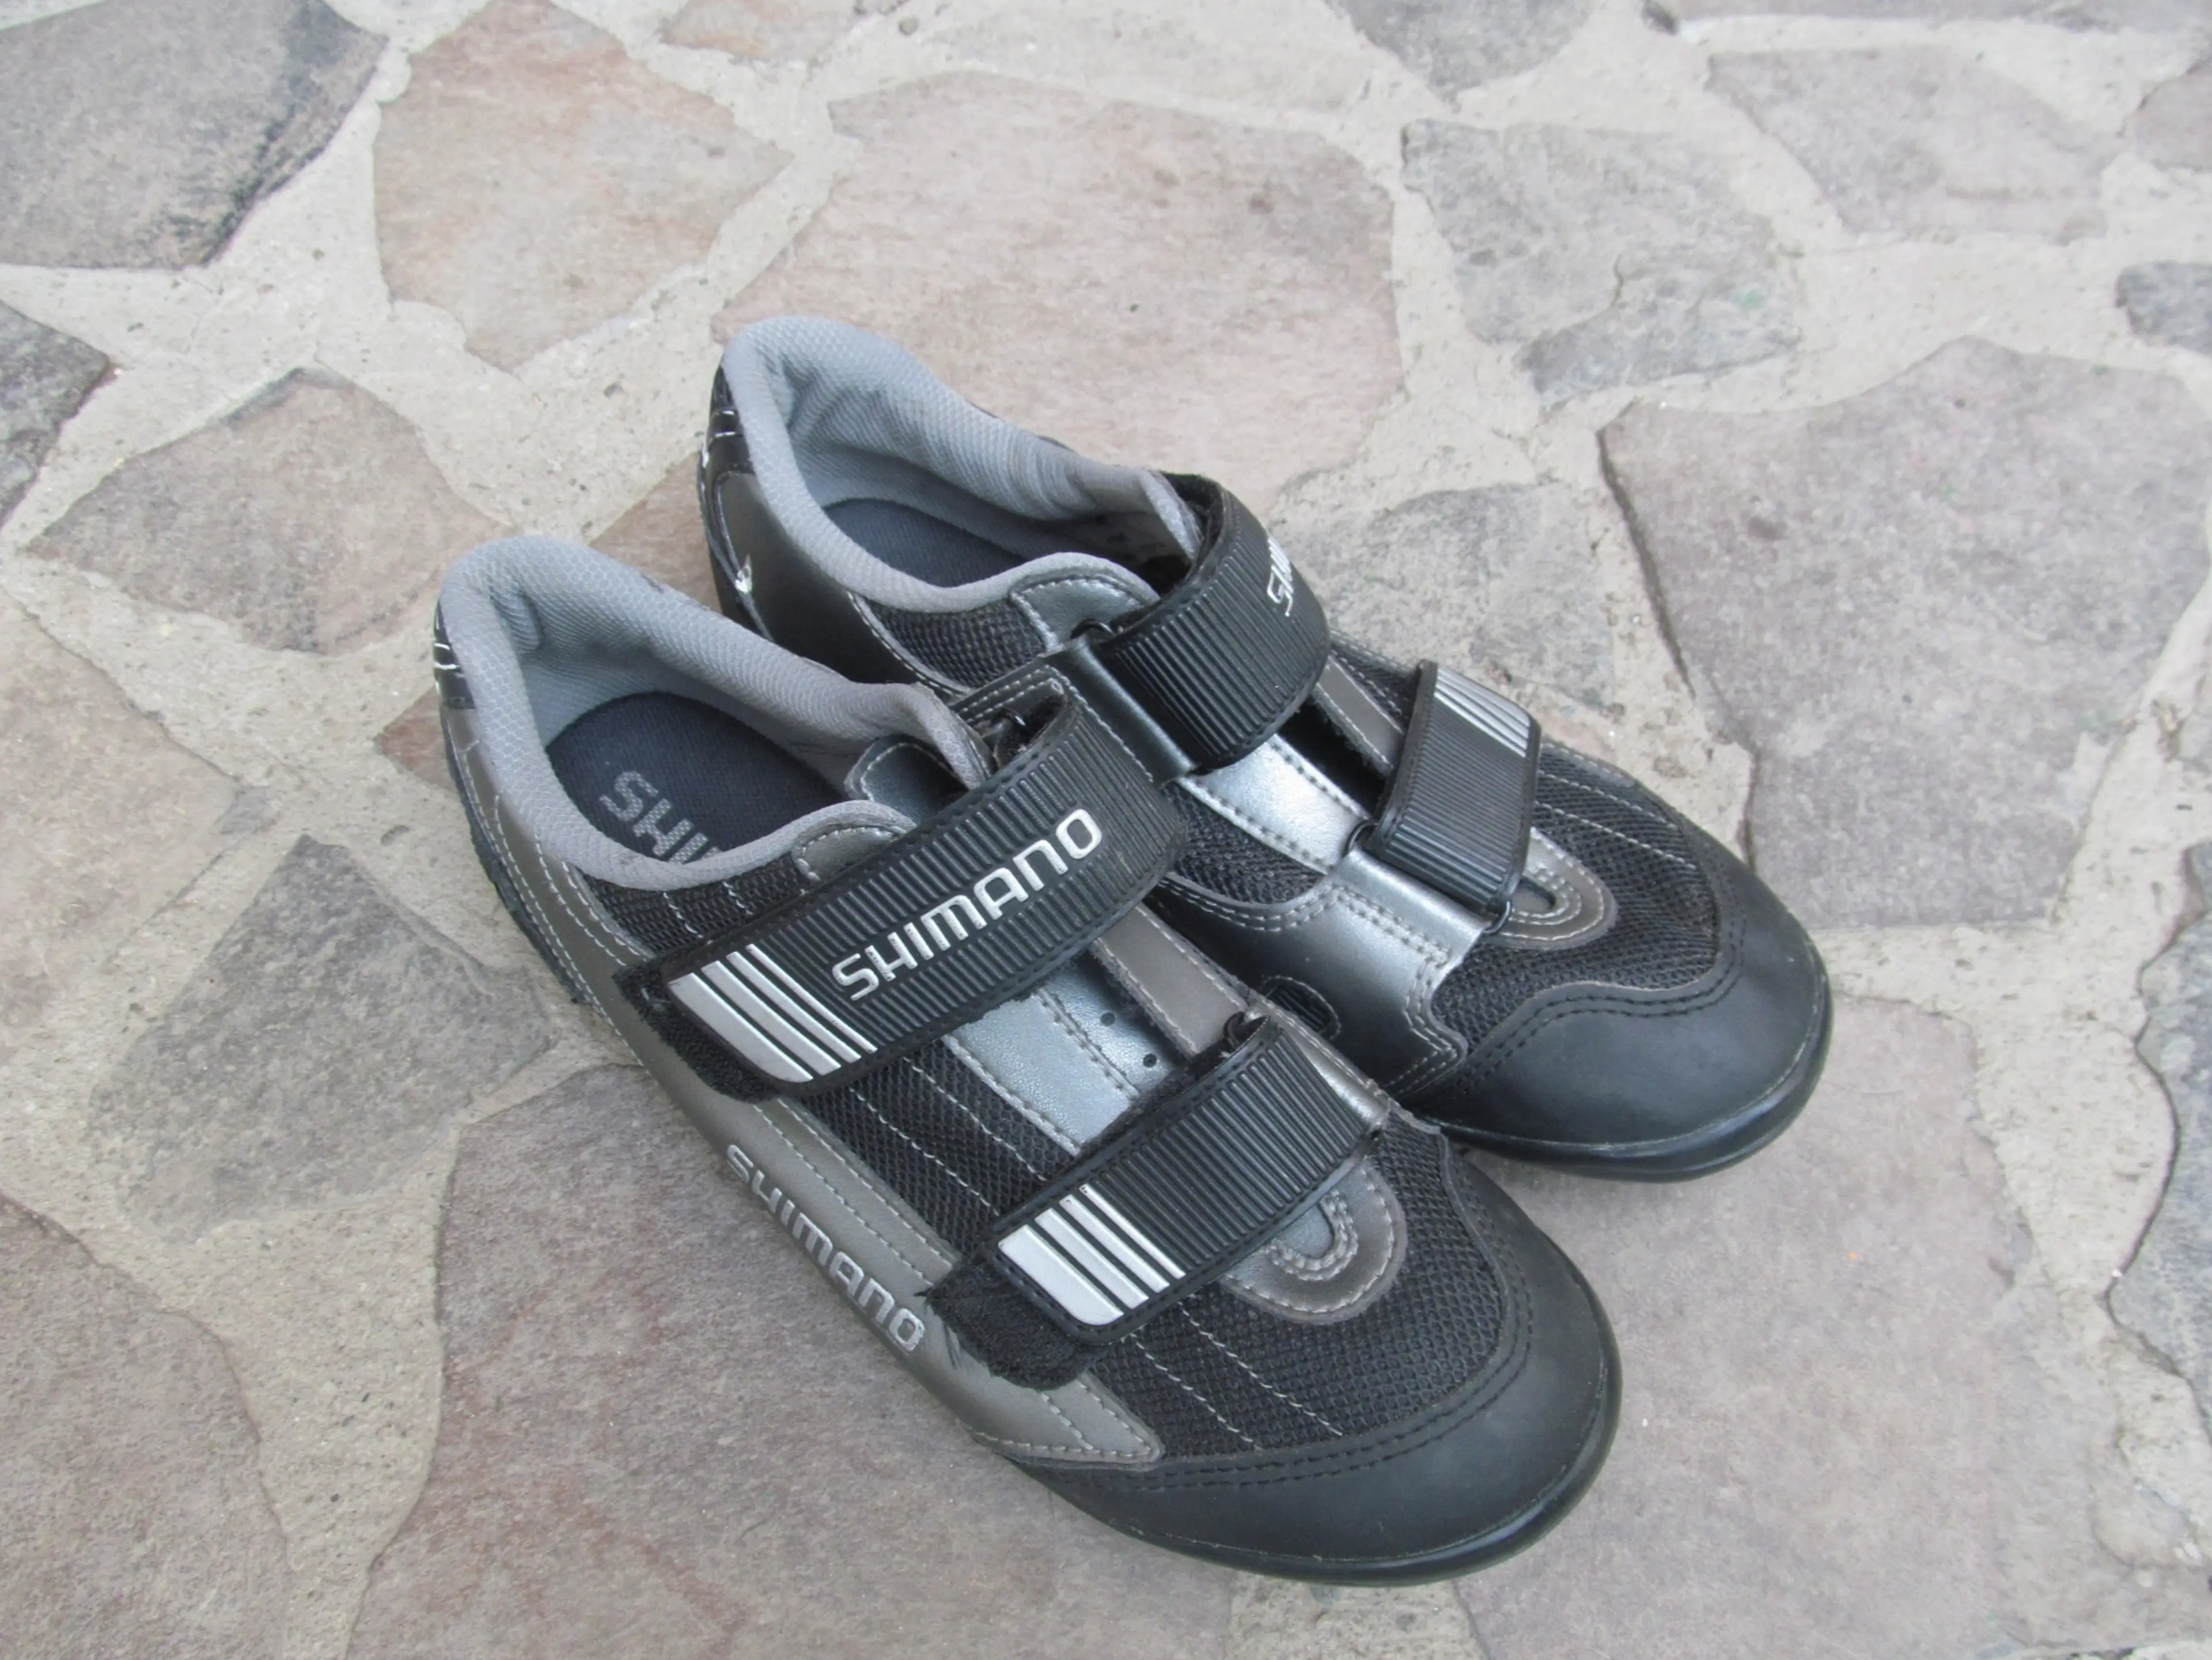 2. Pantofi Shimano SH-M072, nr 42, 26.5 cm